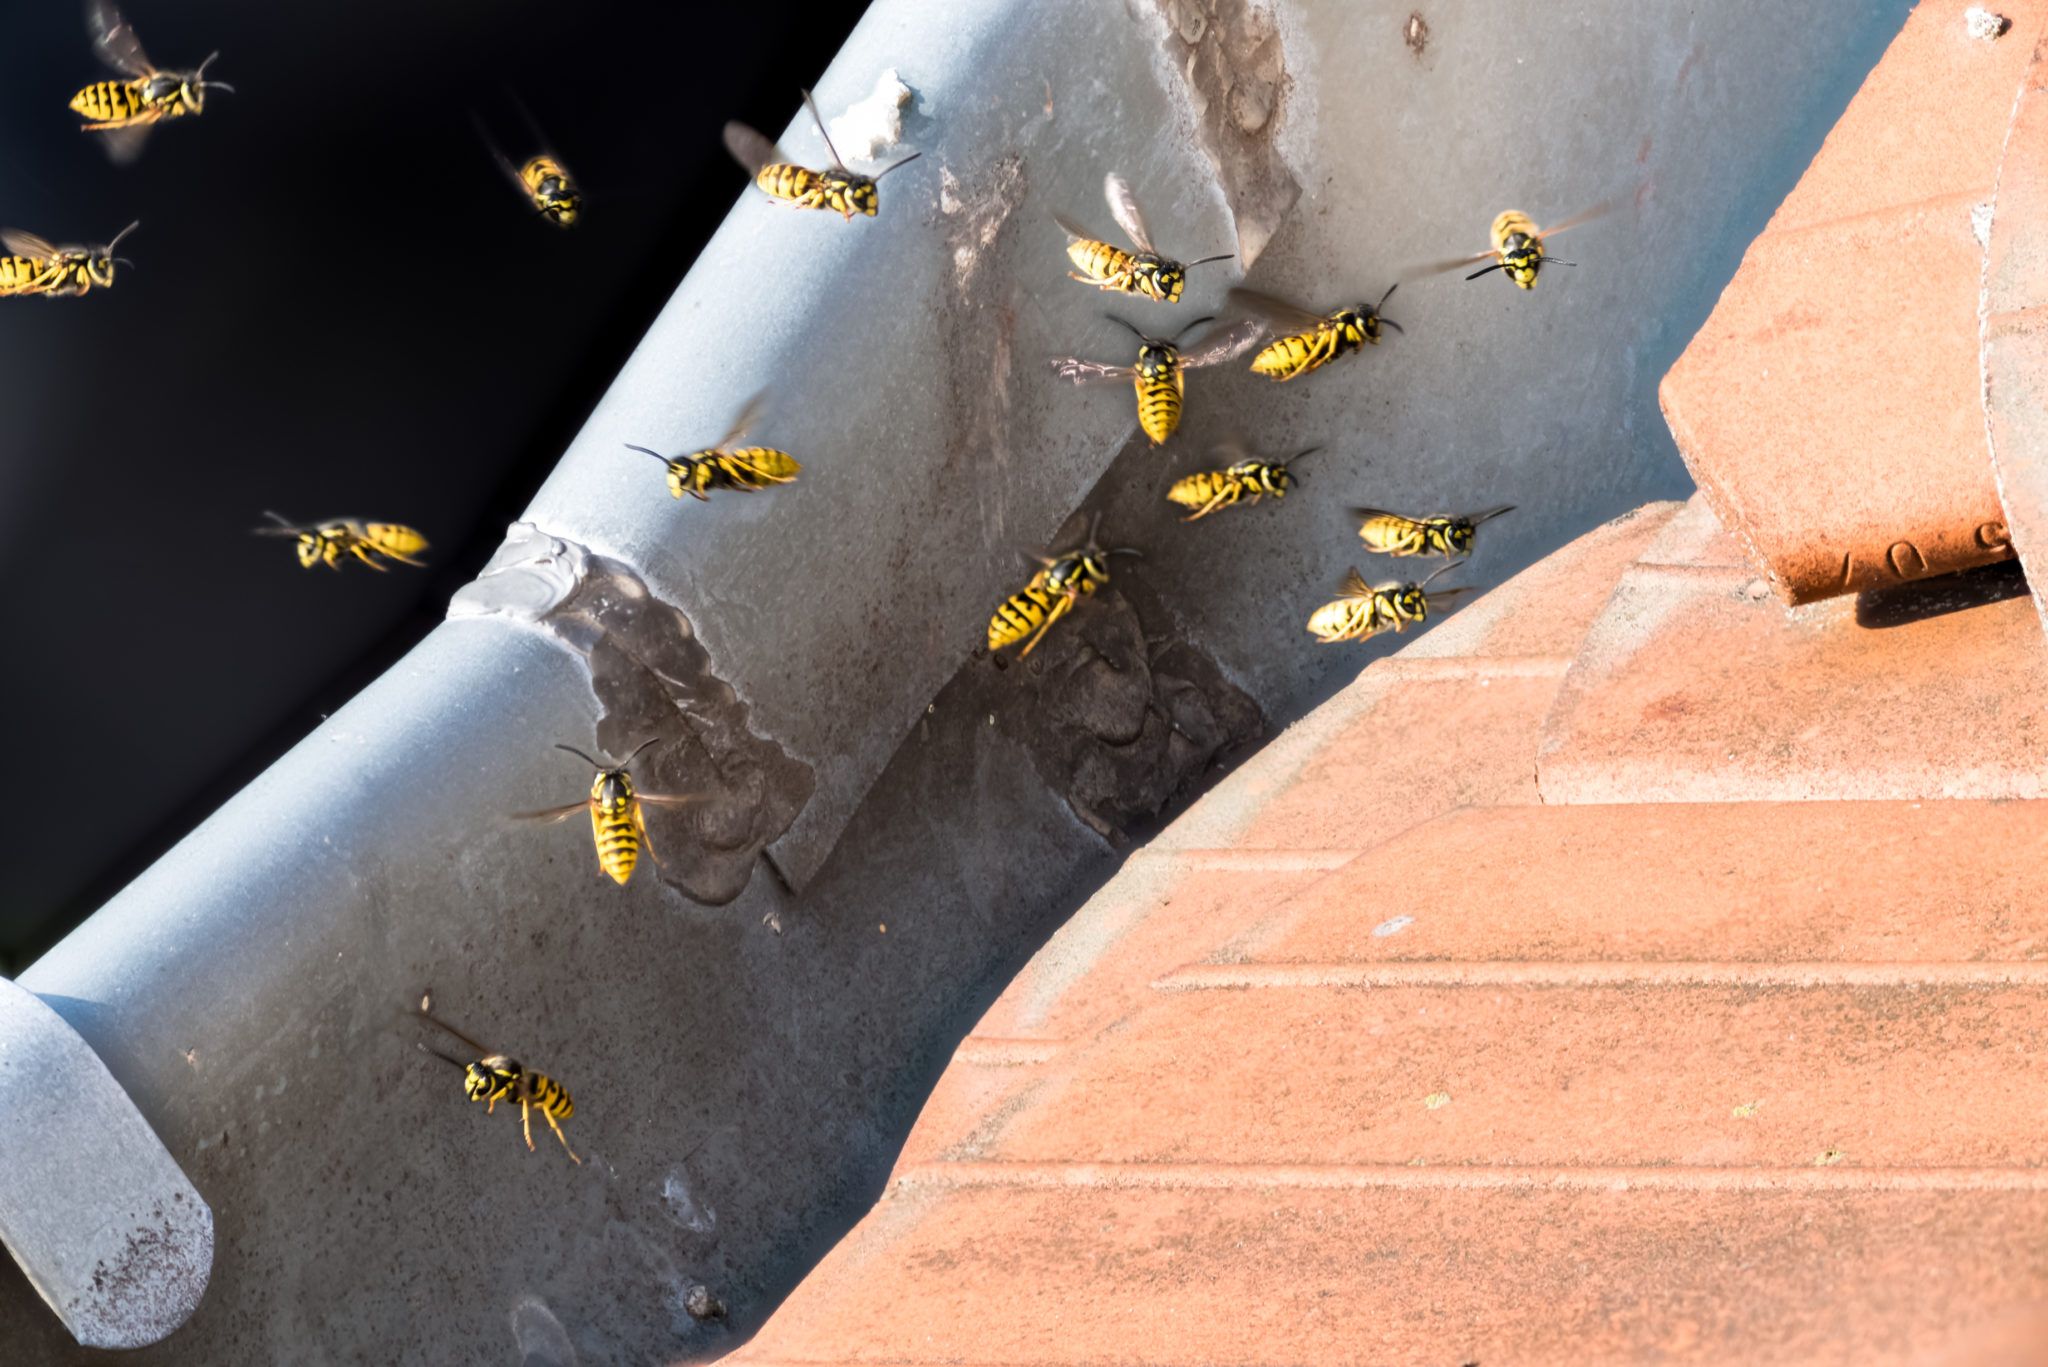 wasps ireland summer